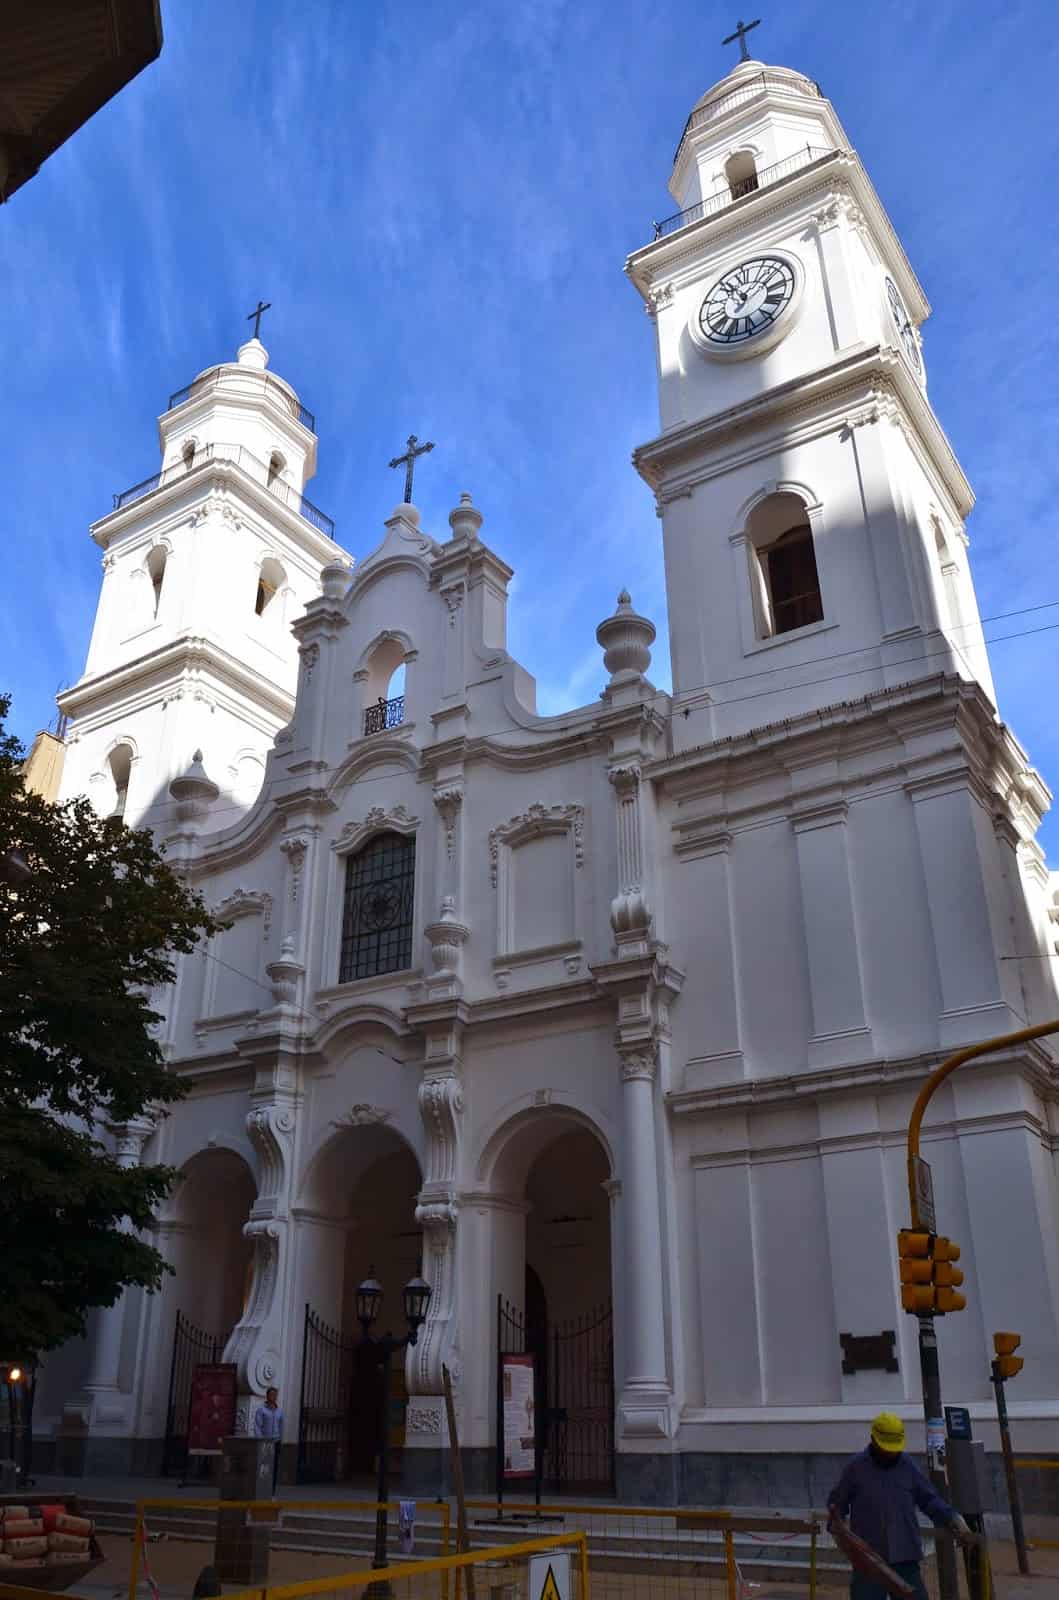 San Ignacio de Loyola in Buenos Aires, Argentina